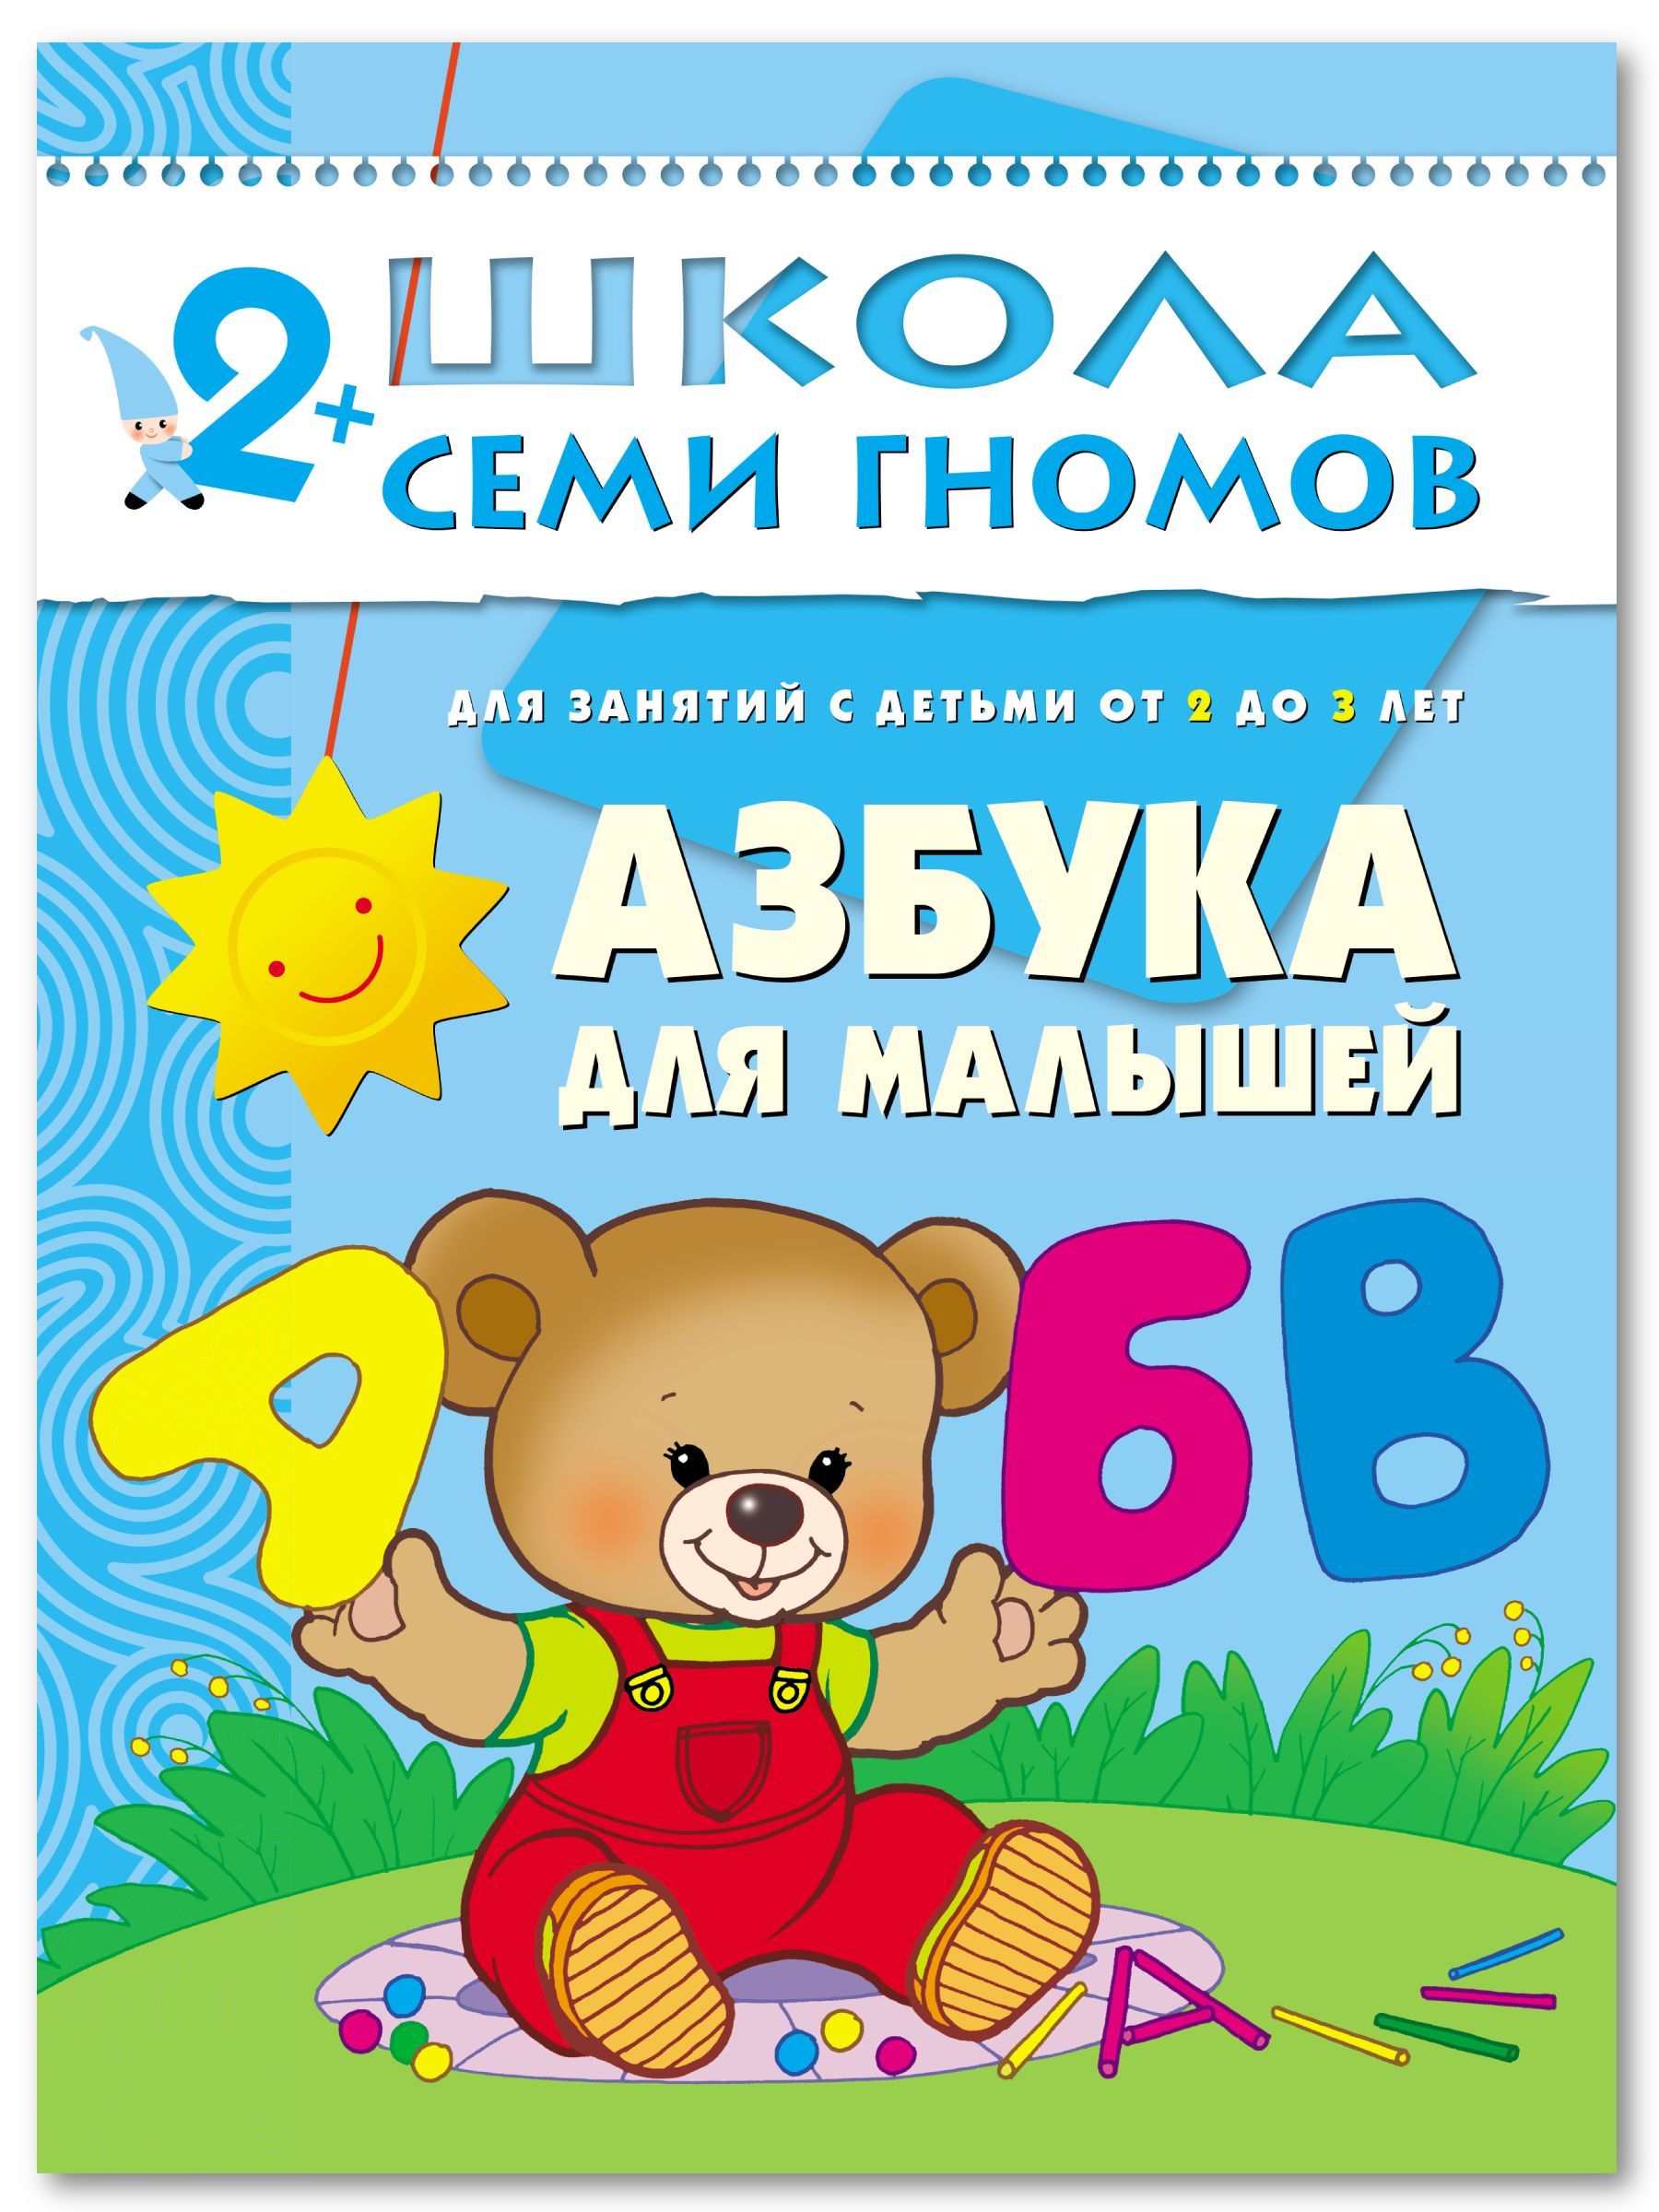 Алфавит детям отзывы. Школа семи гномов 2-3 года. Азбука для малышей. Книга малышам. Книжка для самых маленьких. Азбука для малышей.